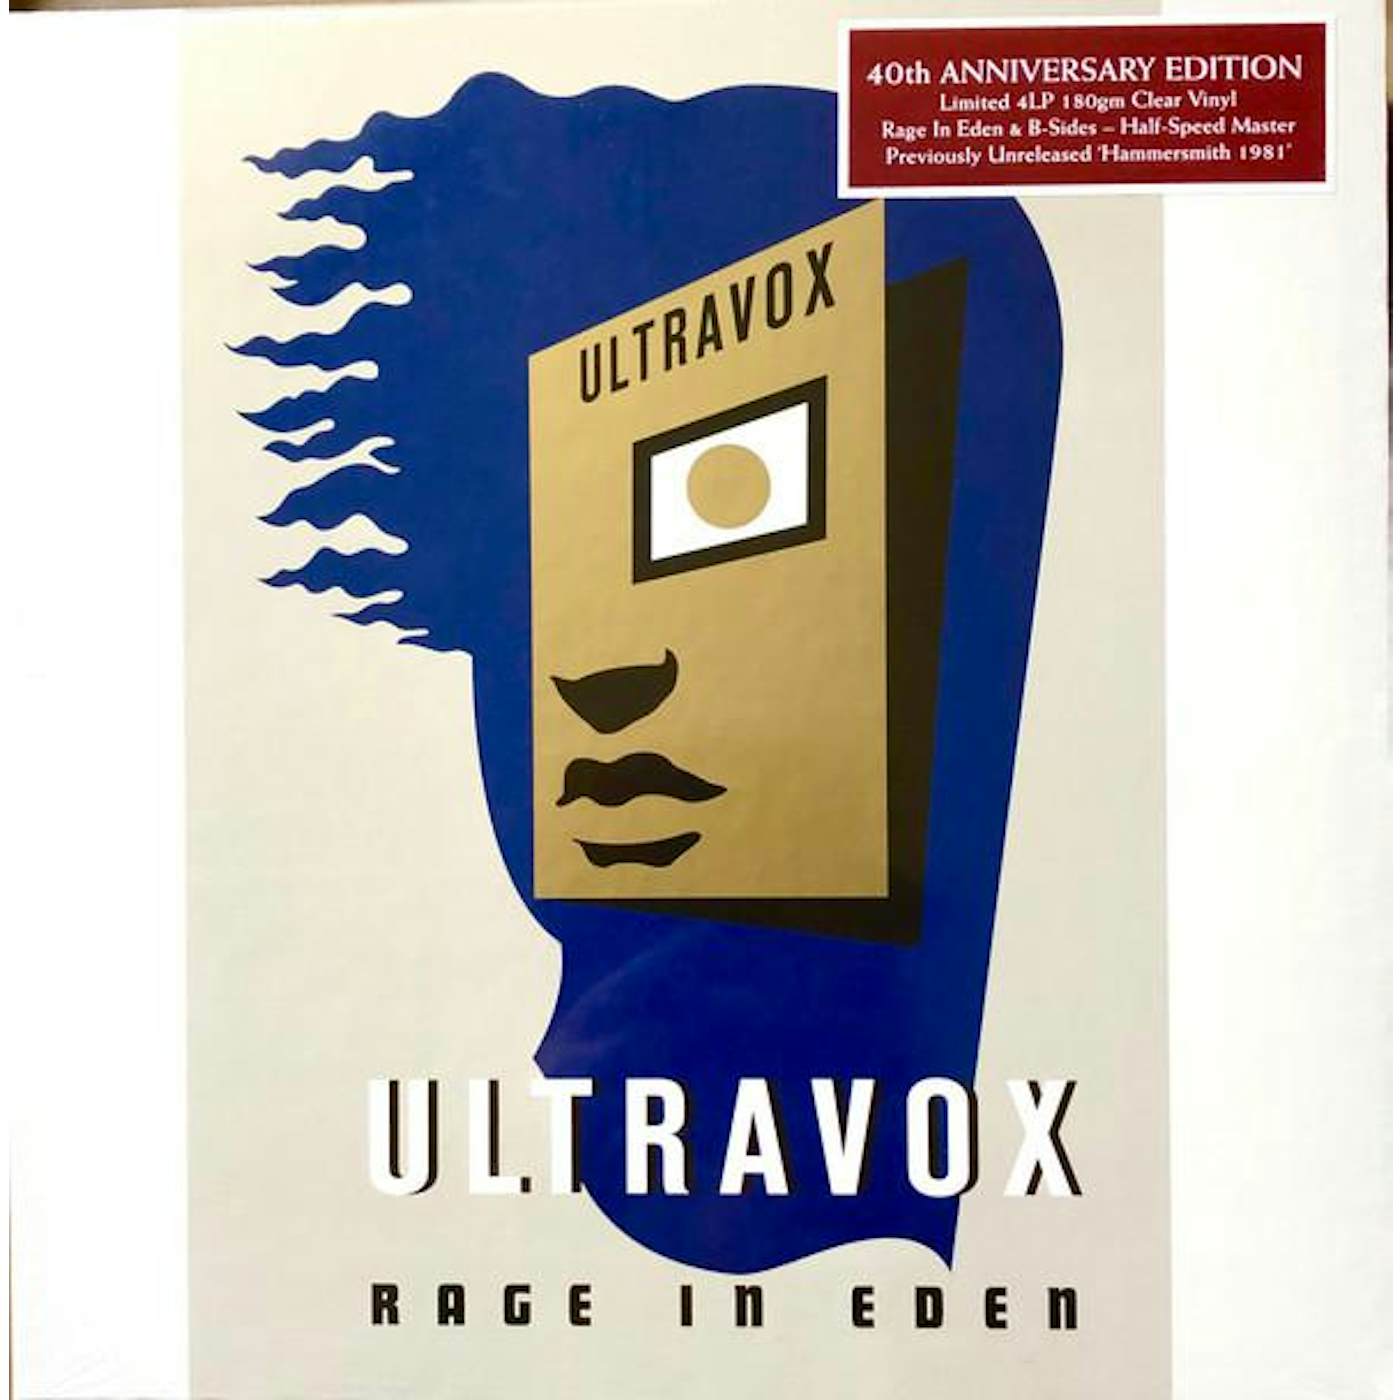 Ultravox RAGE IN EDEN (DELUXE ED./40TH ANNIVERSARY) Vinyl Record